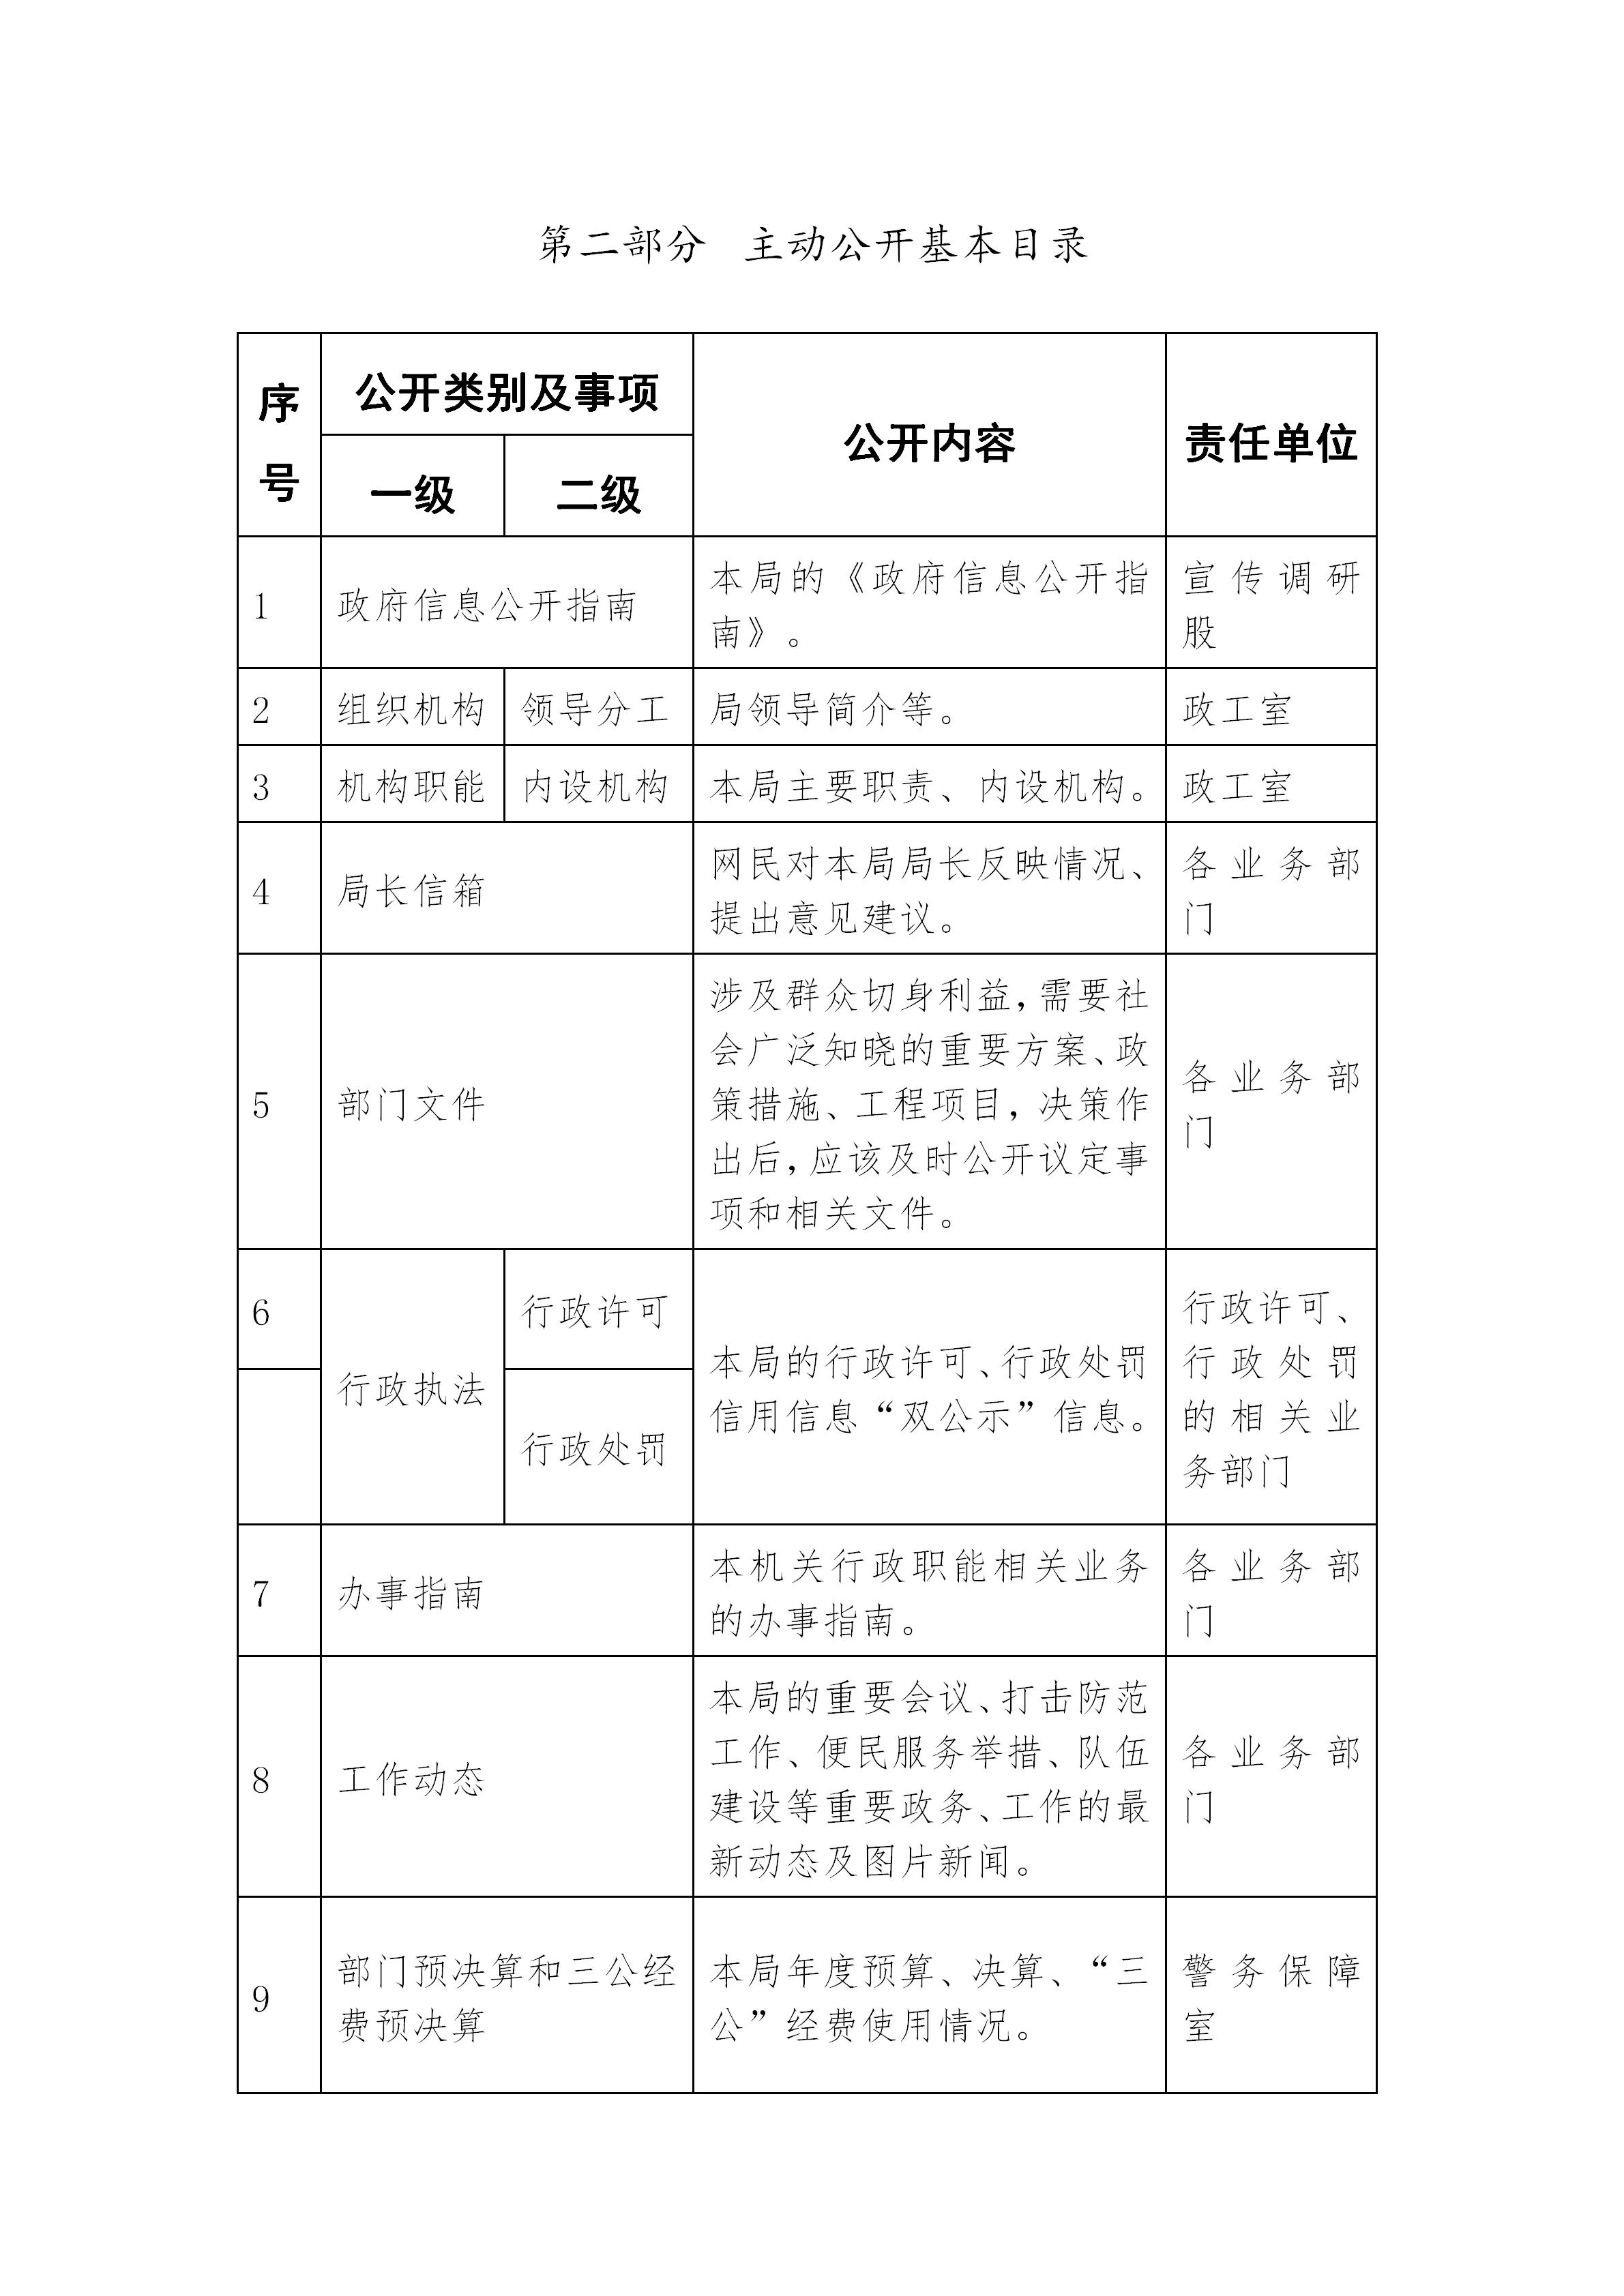 平远县公安局政府信息主动公开基本目录_03.jpg